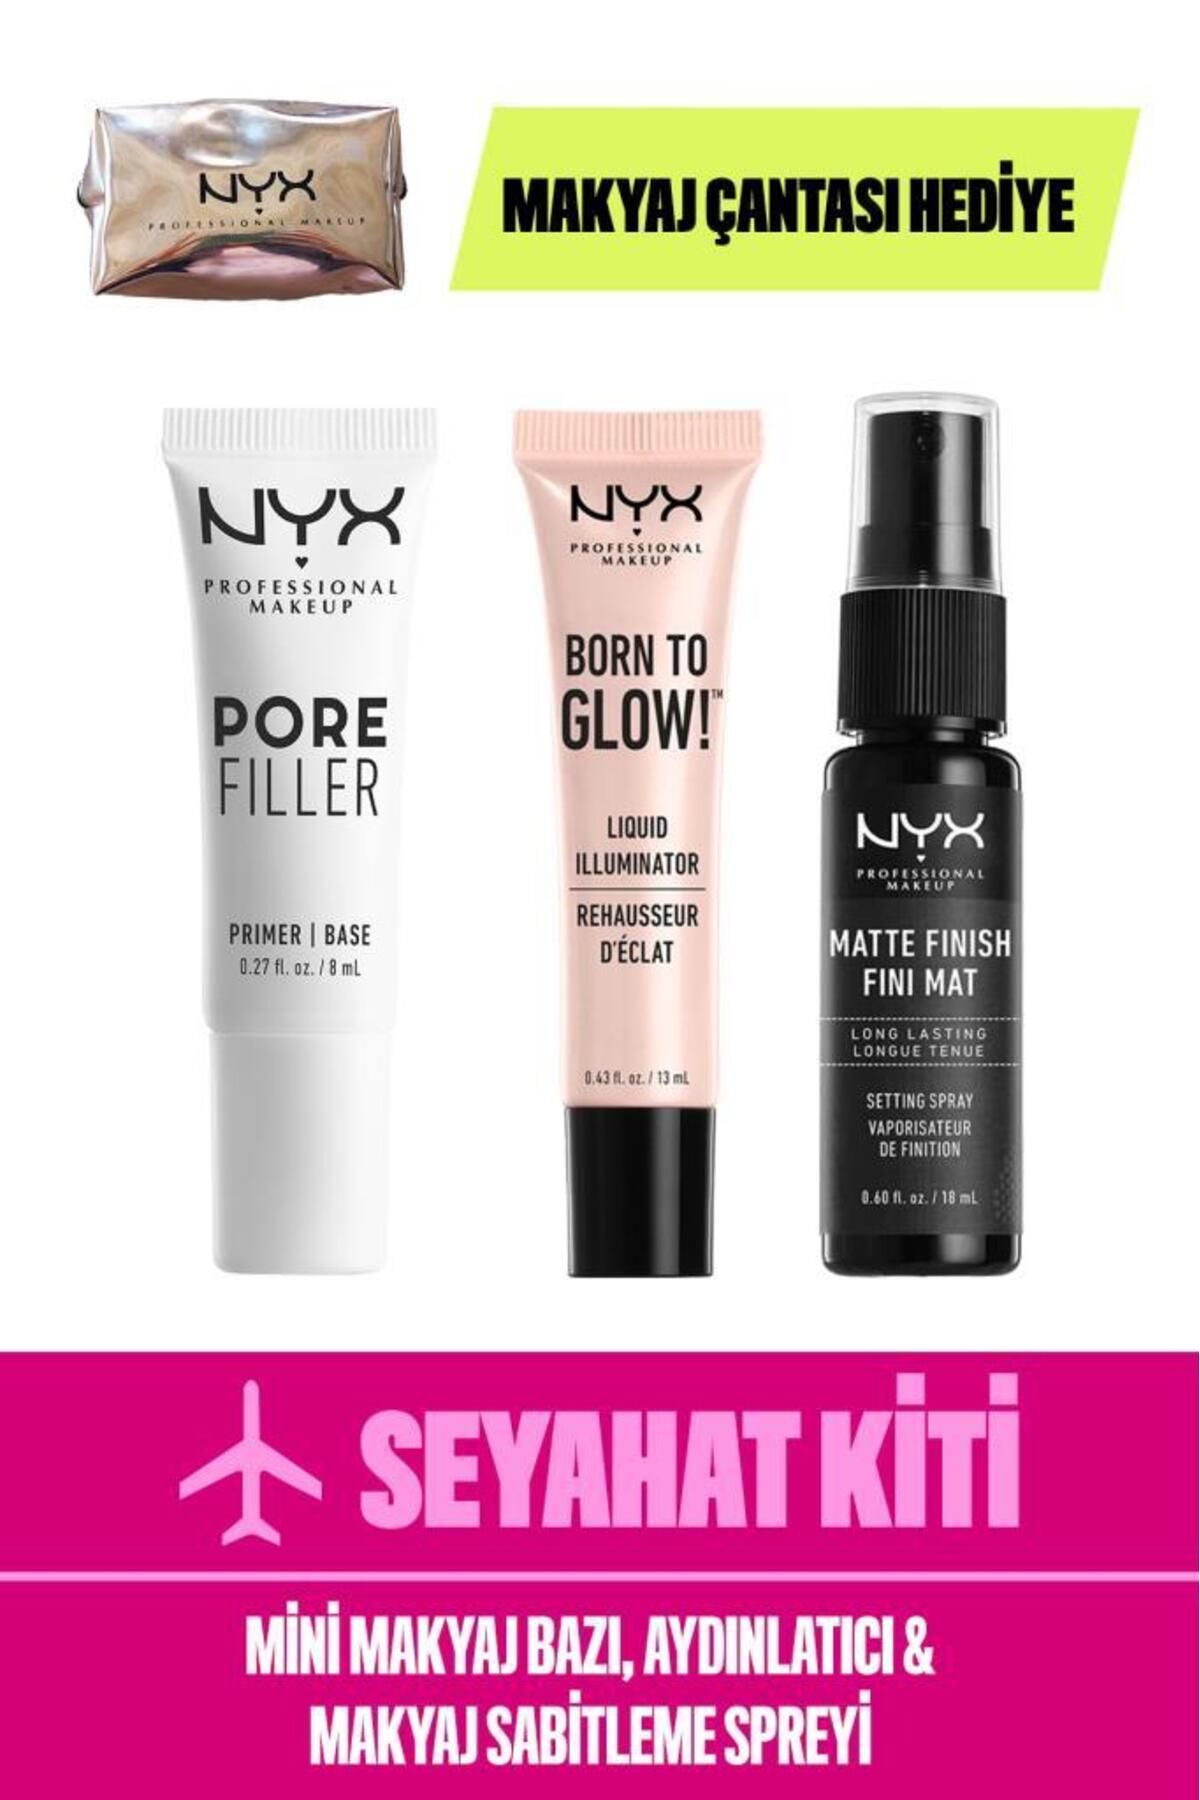 NYX Professional Makeup Seyahat Kiti - Mini Makyaj Bazı & Aydınlatıcı & Makyaj Sabitleme Spreyi & Çanta